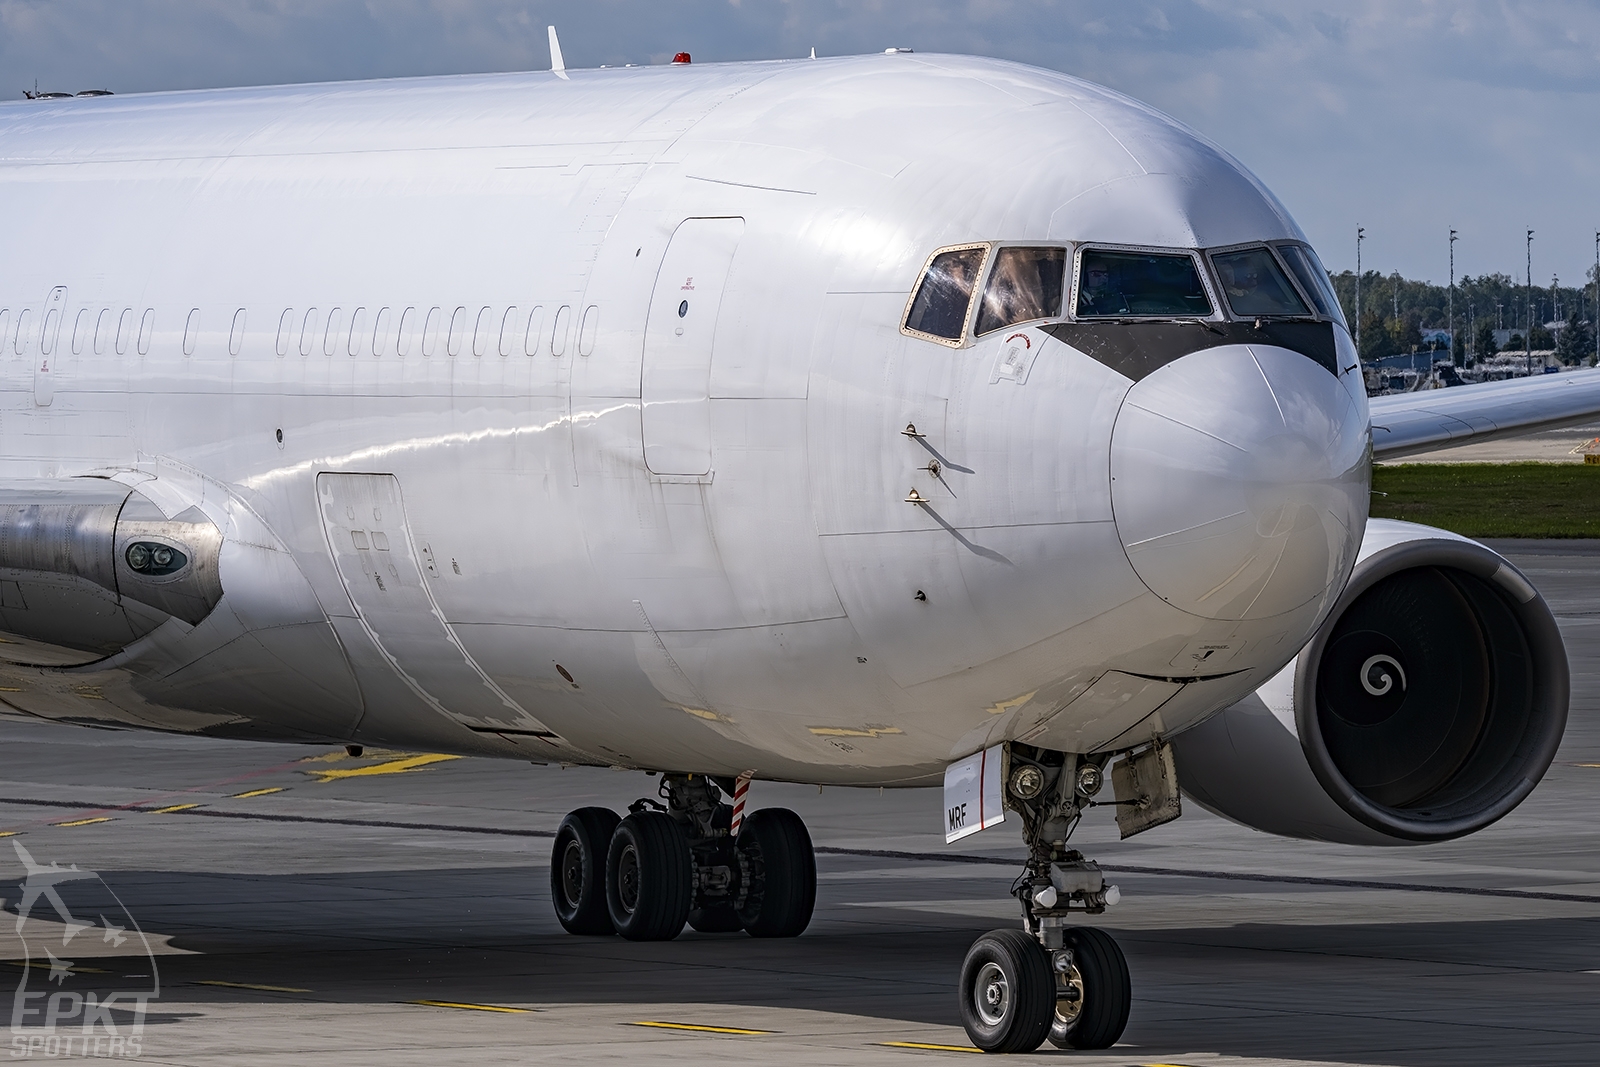 SP-MRF - Boeing 767 -281(BDSF) (Sky Taxi) / Pyrzowice - Katowice Poland [EPKT/KTW]